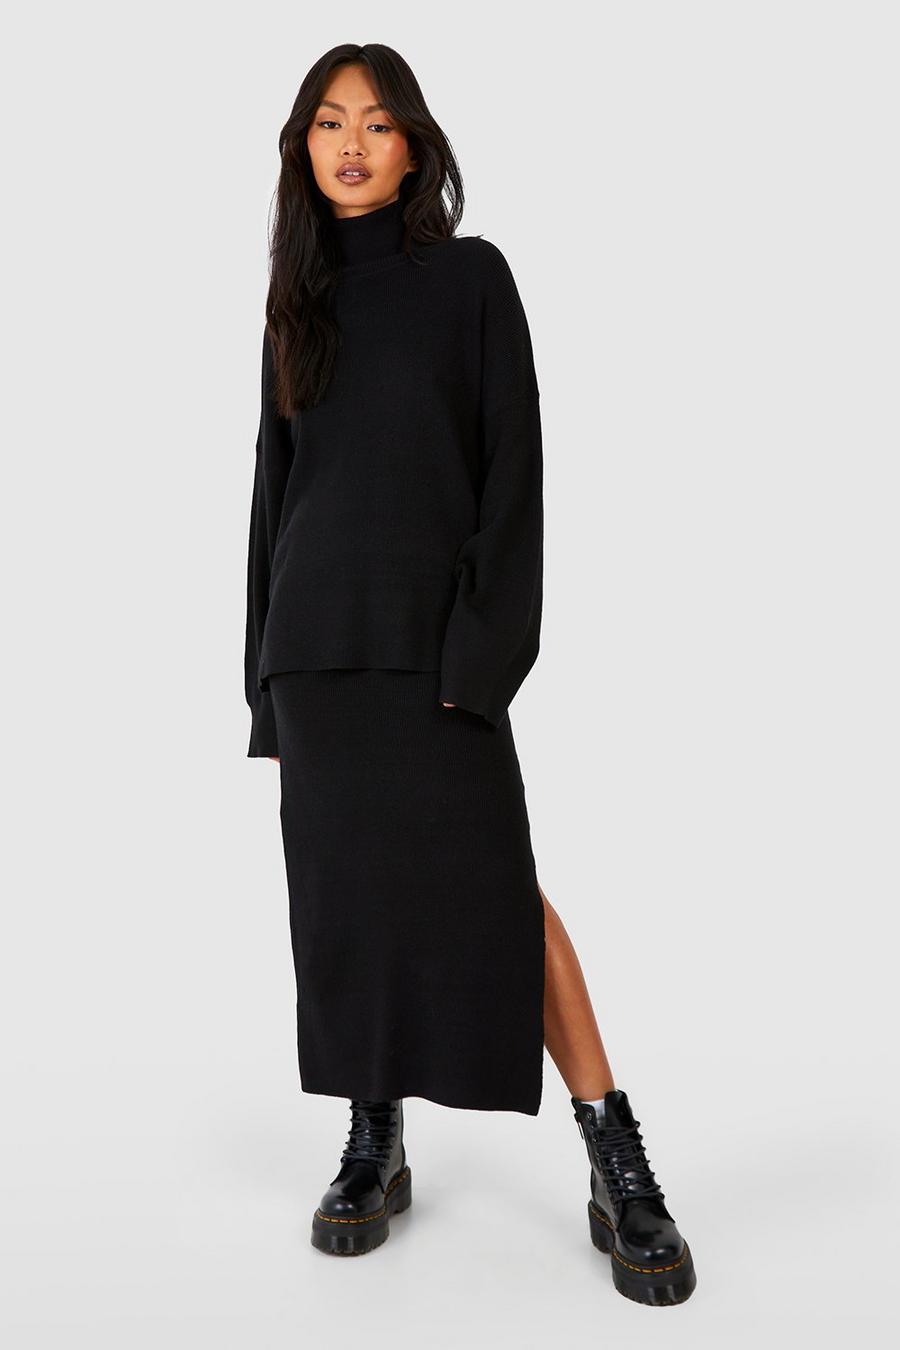 Black Fine Gauge Turtleneck Sweater And Skirt Knitted Set